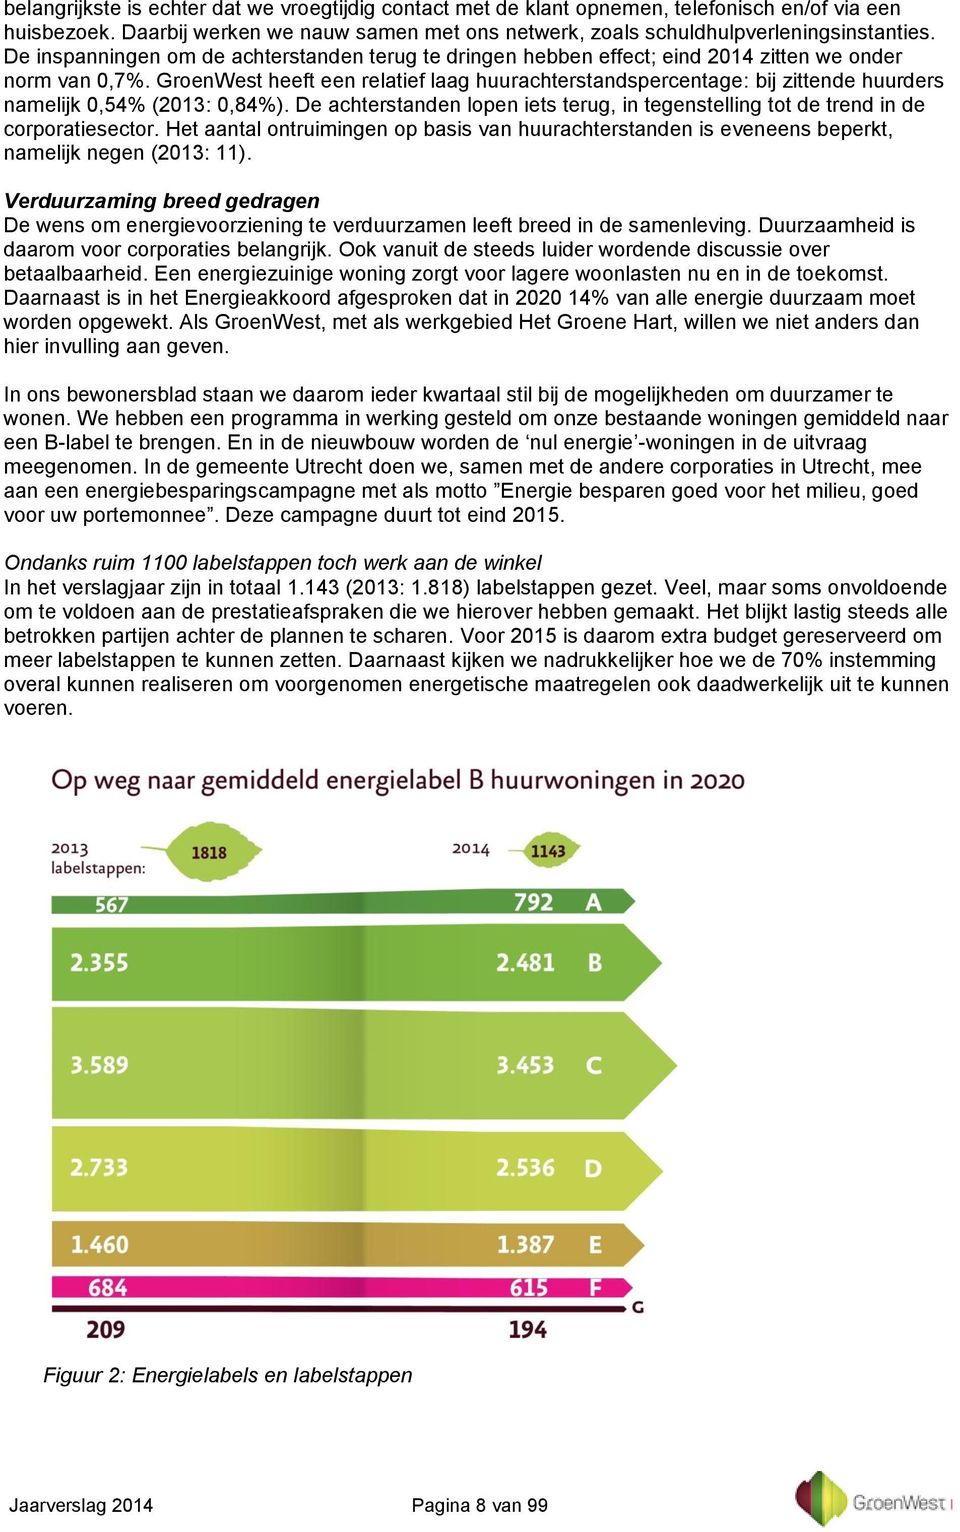 GroenWest heeft een relatief laag huurachterstandspercentage: bij zittende huurders namelijk 0,54% (2013: 0,84%).